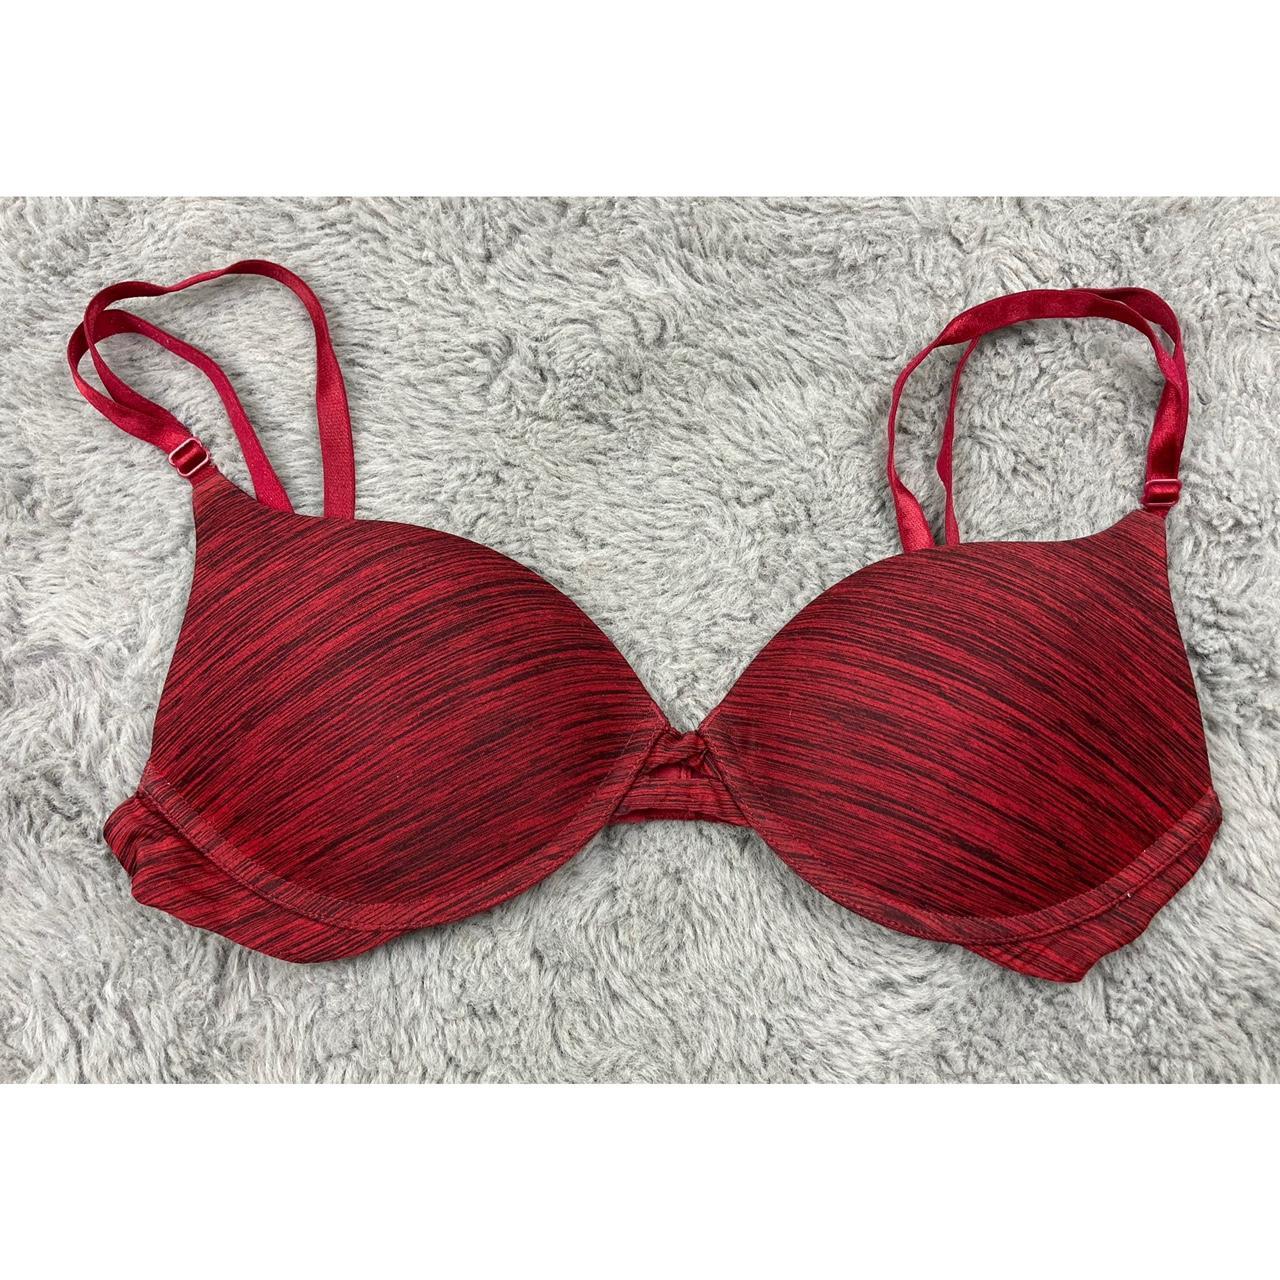 Victoria’s Secret no wire red bra, In used condition